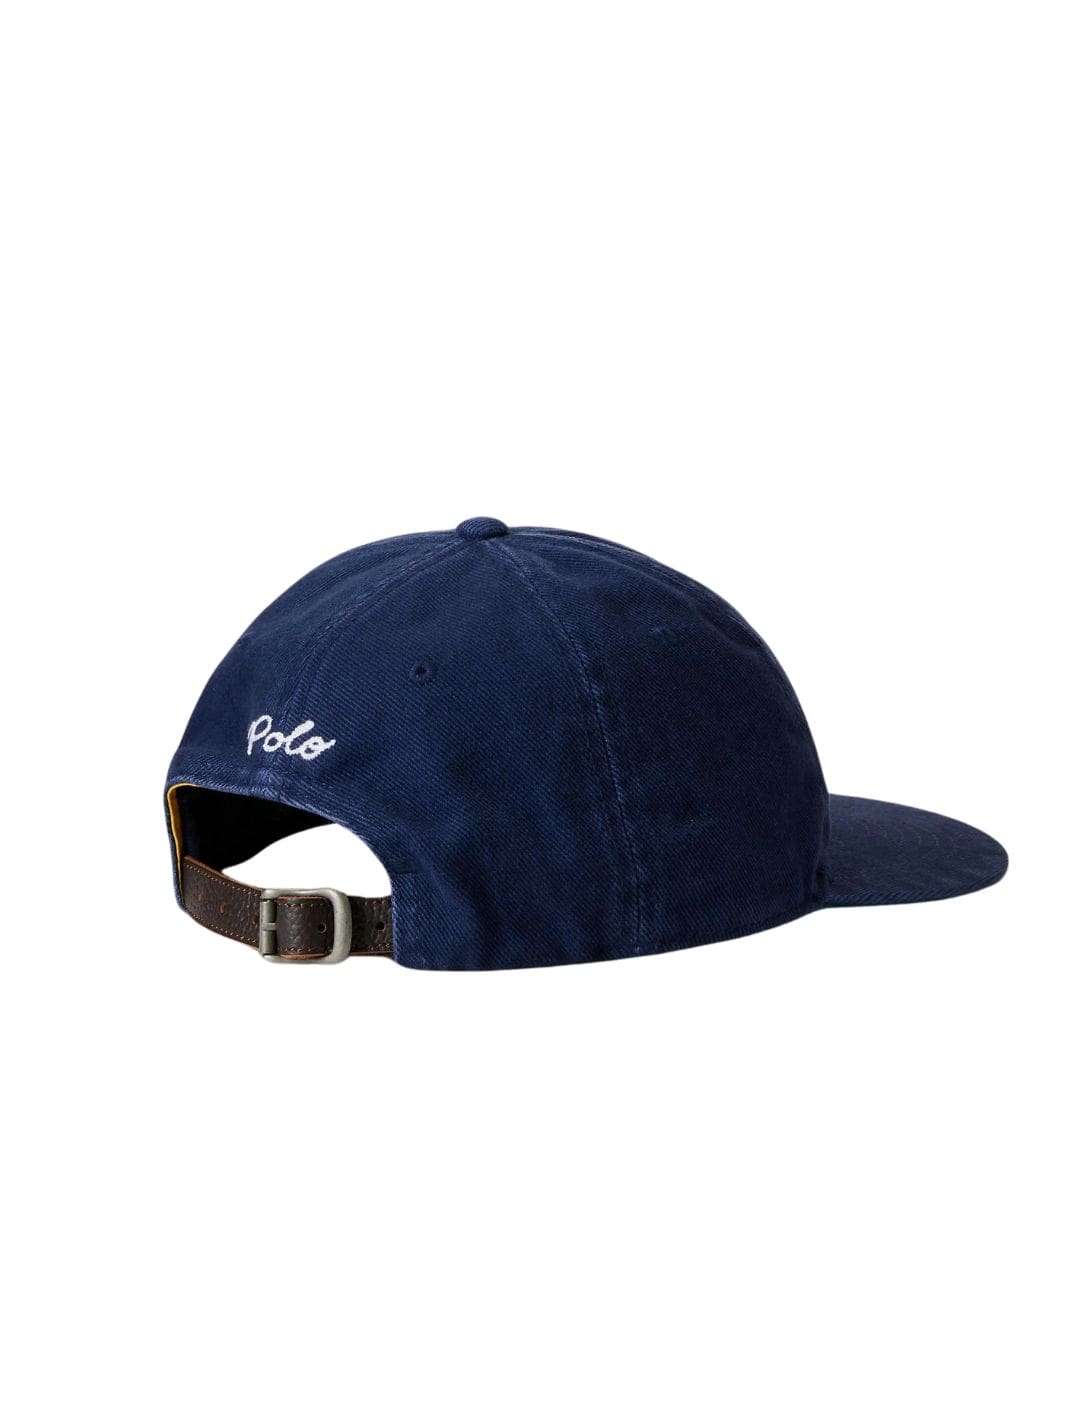 Polo Ralph Lauren Accessories Cap | Twill Ball Cap Navy